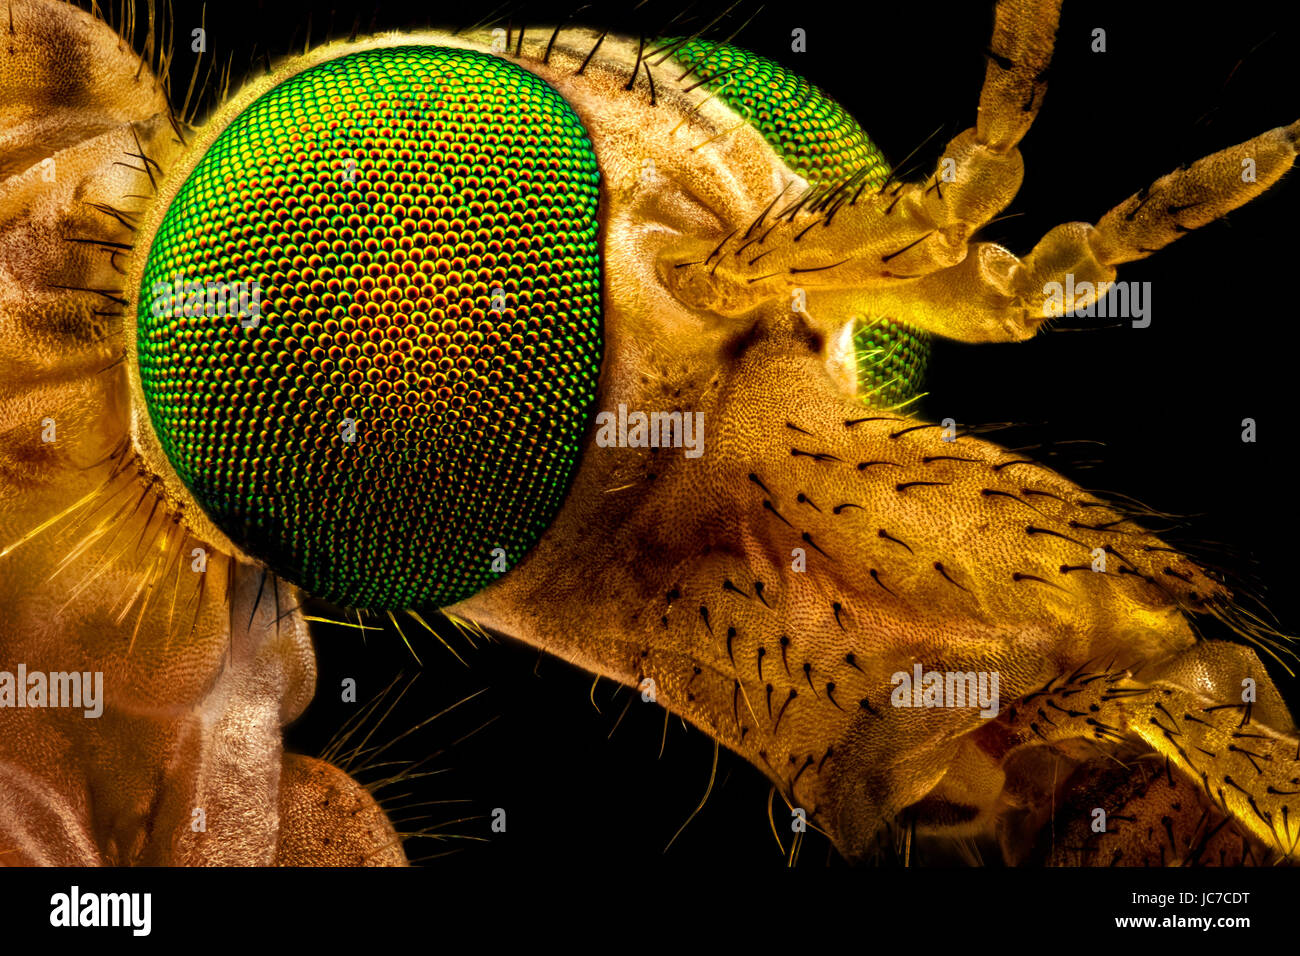 Macro extrema - retrato de un verde eyed fly crane, amplificado a través de un microscopio objetivo (anchura del bastidor es de 2,2mm) Foto de stock